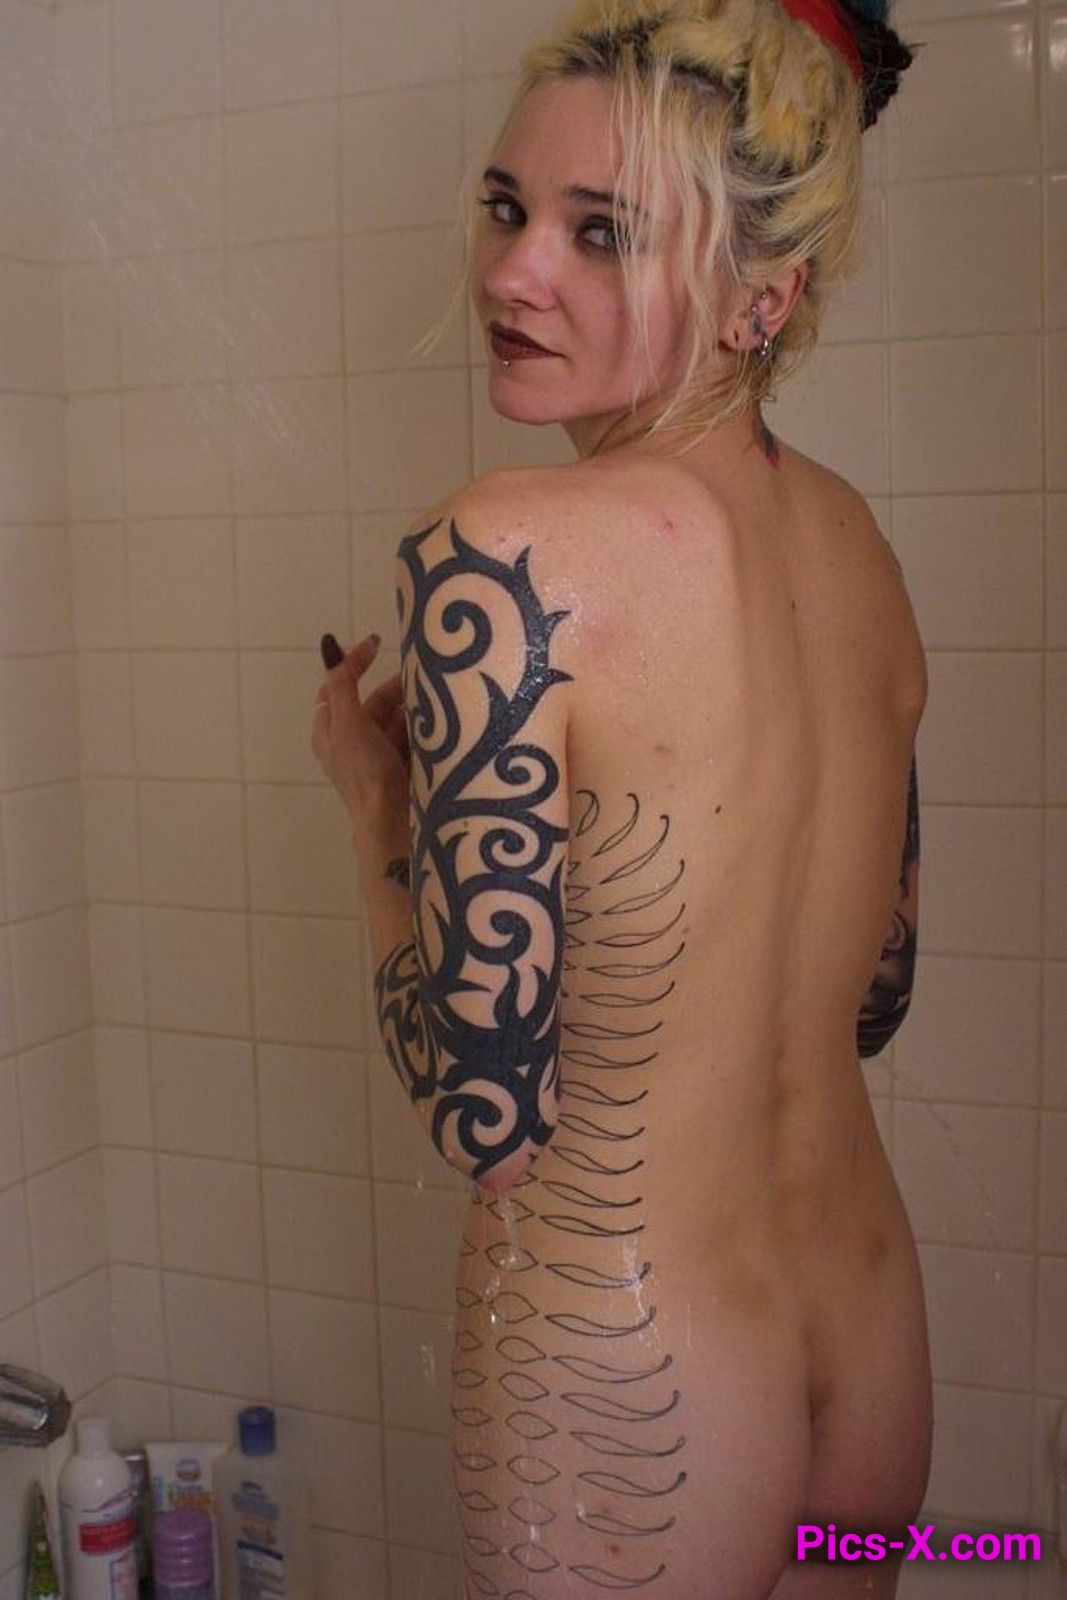 Tattooed blonde hottie enjoying a slow shower - Punk Rock Girlfriend - Image 50